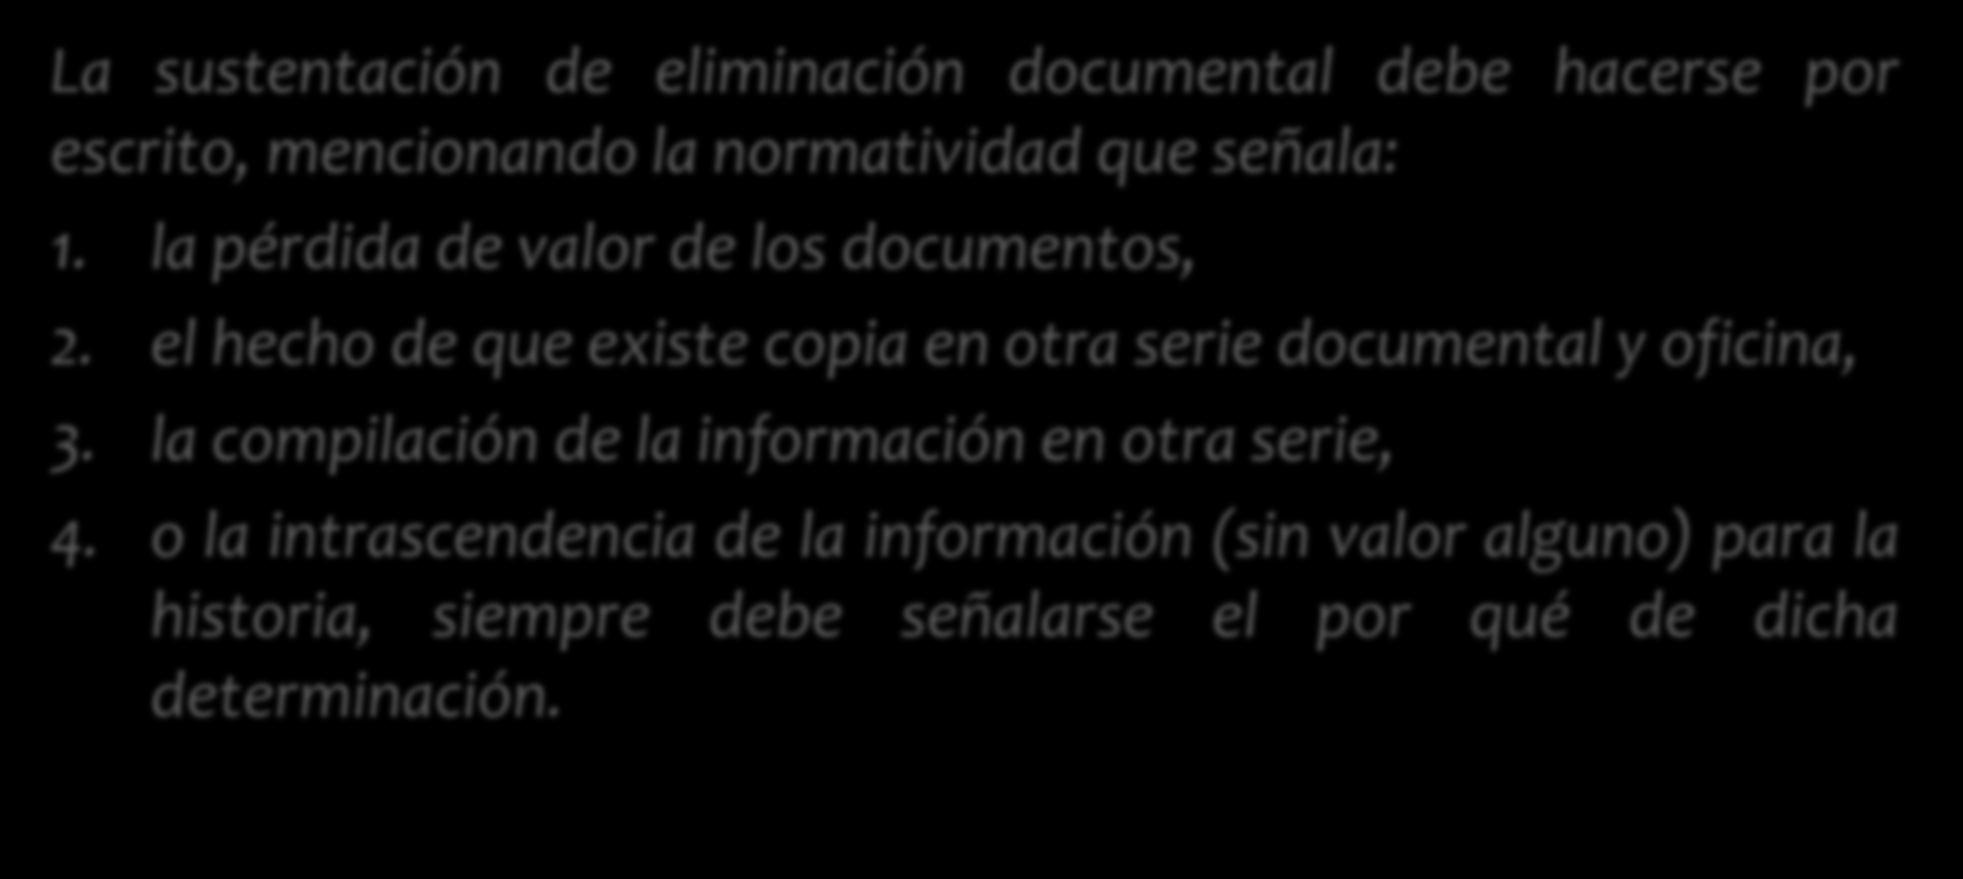 Eliminación de documentos La sustentación de eliminación documental debe hacerse por escrito, mencionando la normatividad que señala: 1. la pérdida de valor de los documentos, 2.